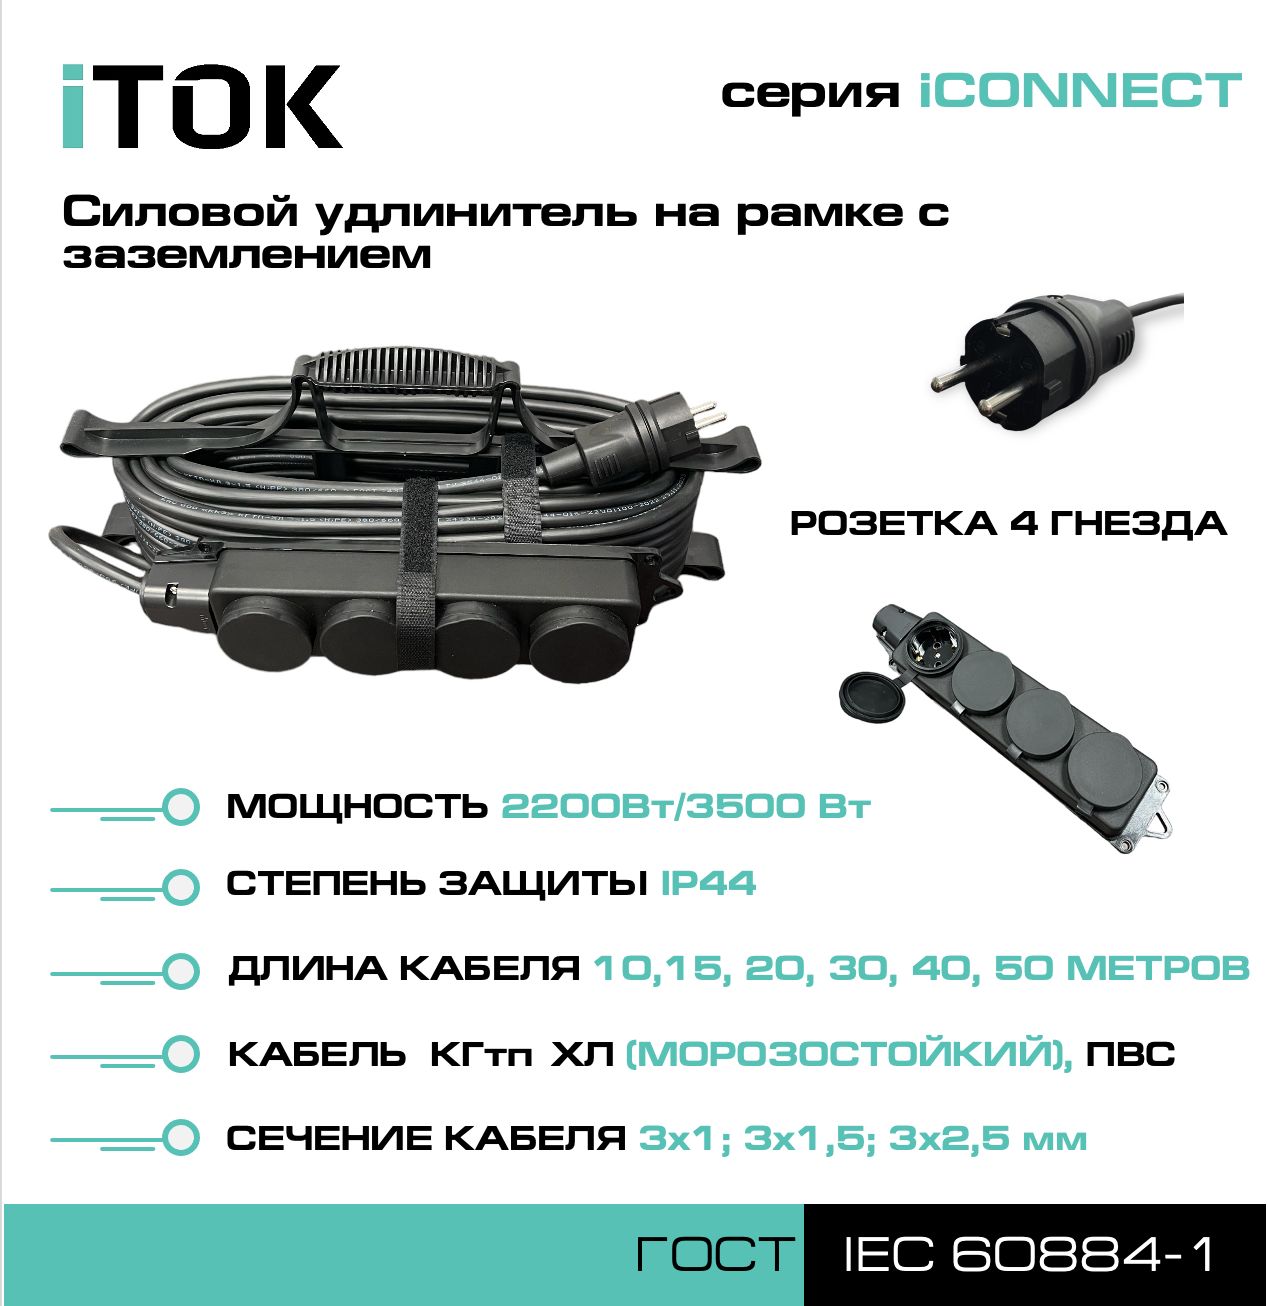 Удлинитель на рамке с заземлением серии iTOK iCONNECT КГтп-ХЛ 3х1,5 мм 4 гнезда IP44 40 м удлинитель navigator npe s 05 300 x 2x0 75 б з 5 гнезда 3м 71553